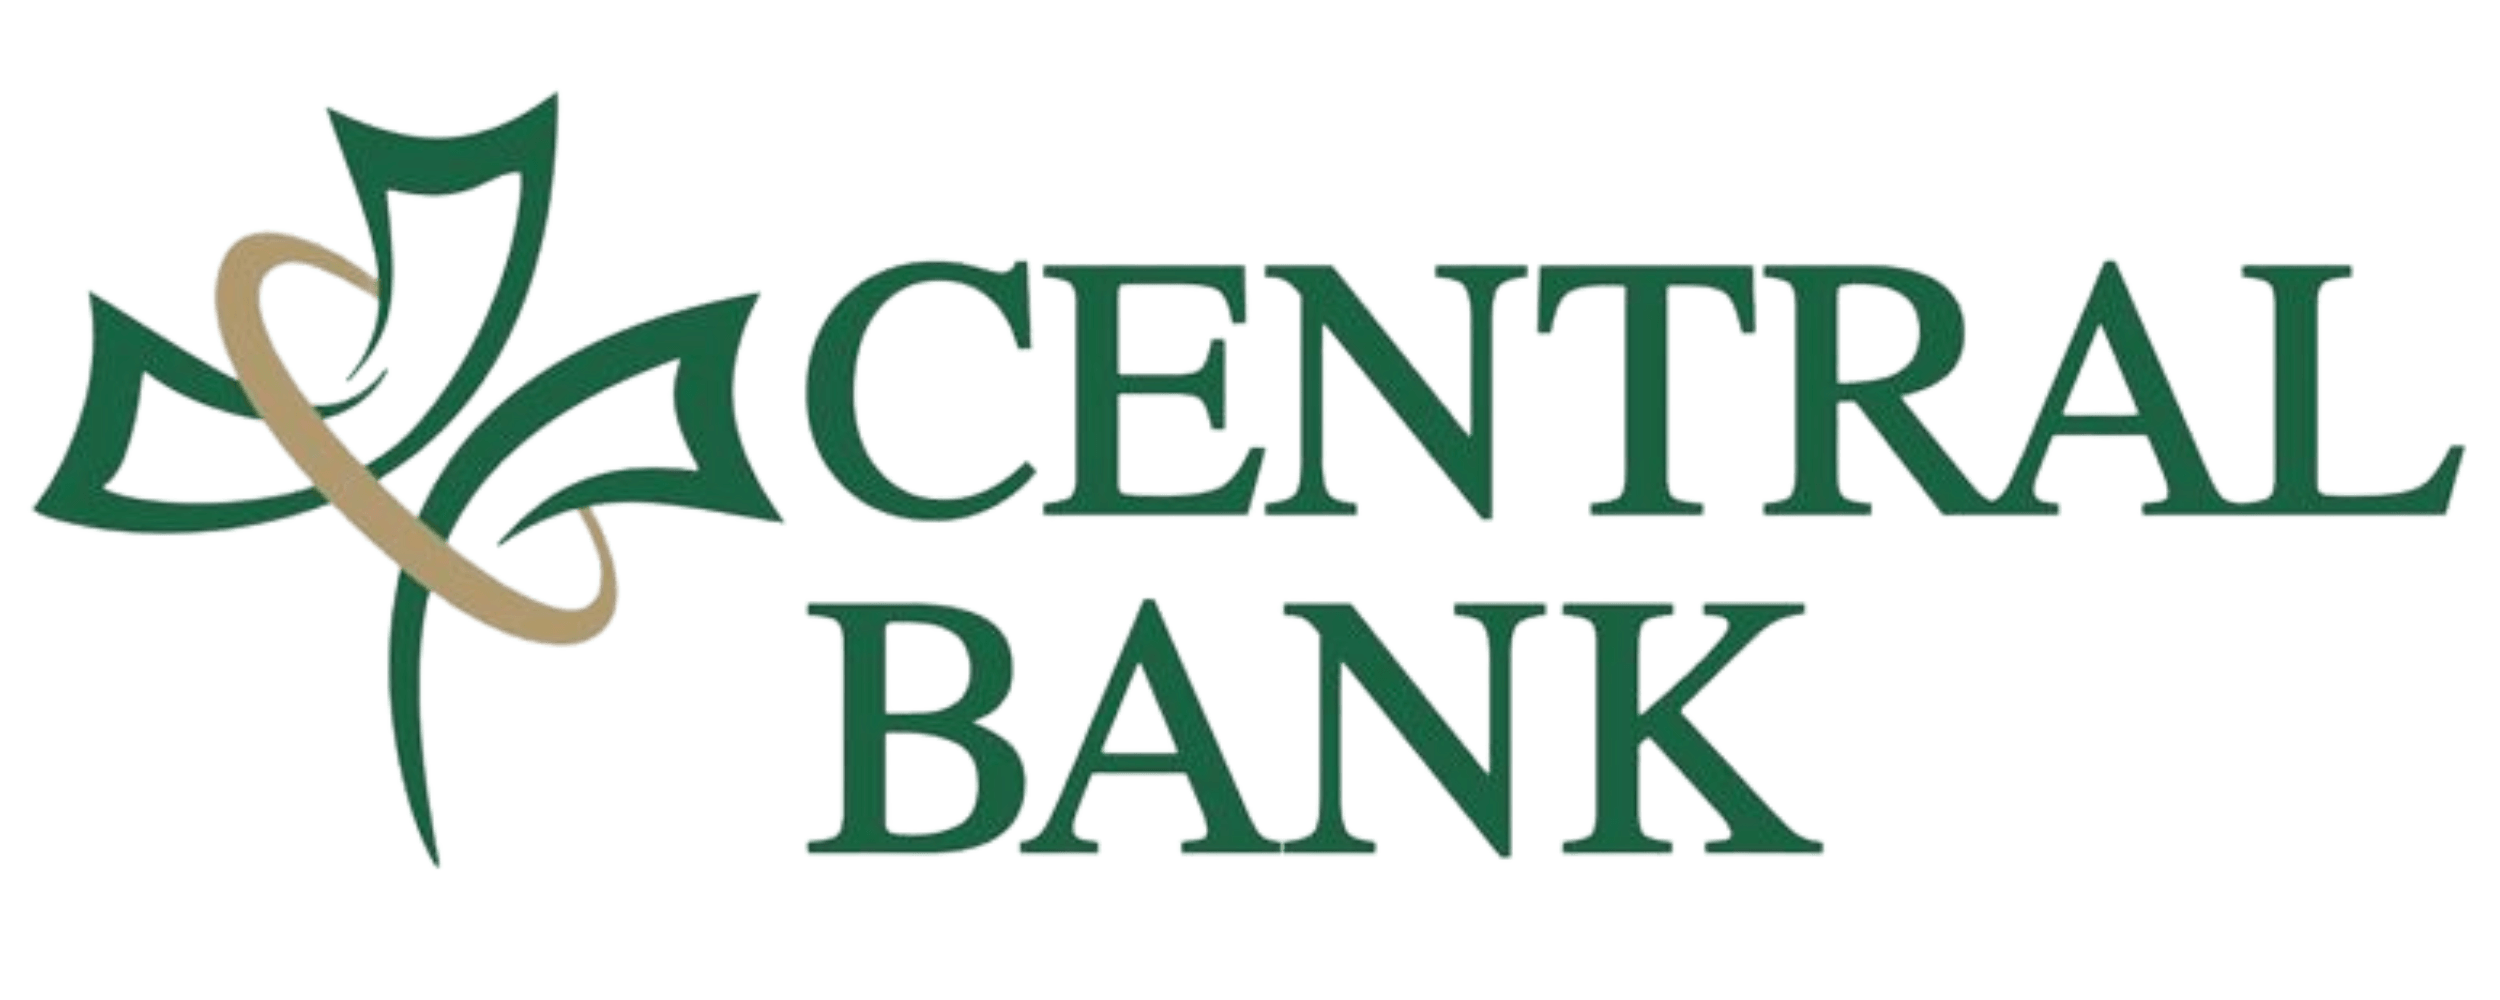 Central Bank logo (transparent)